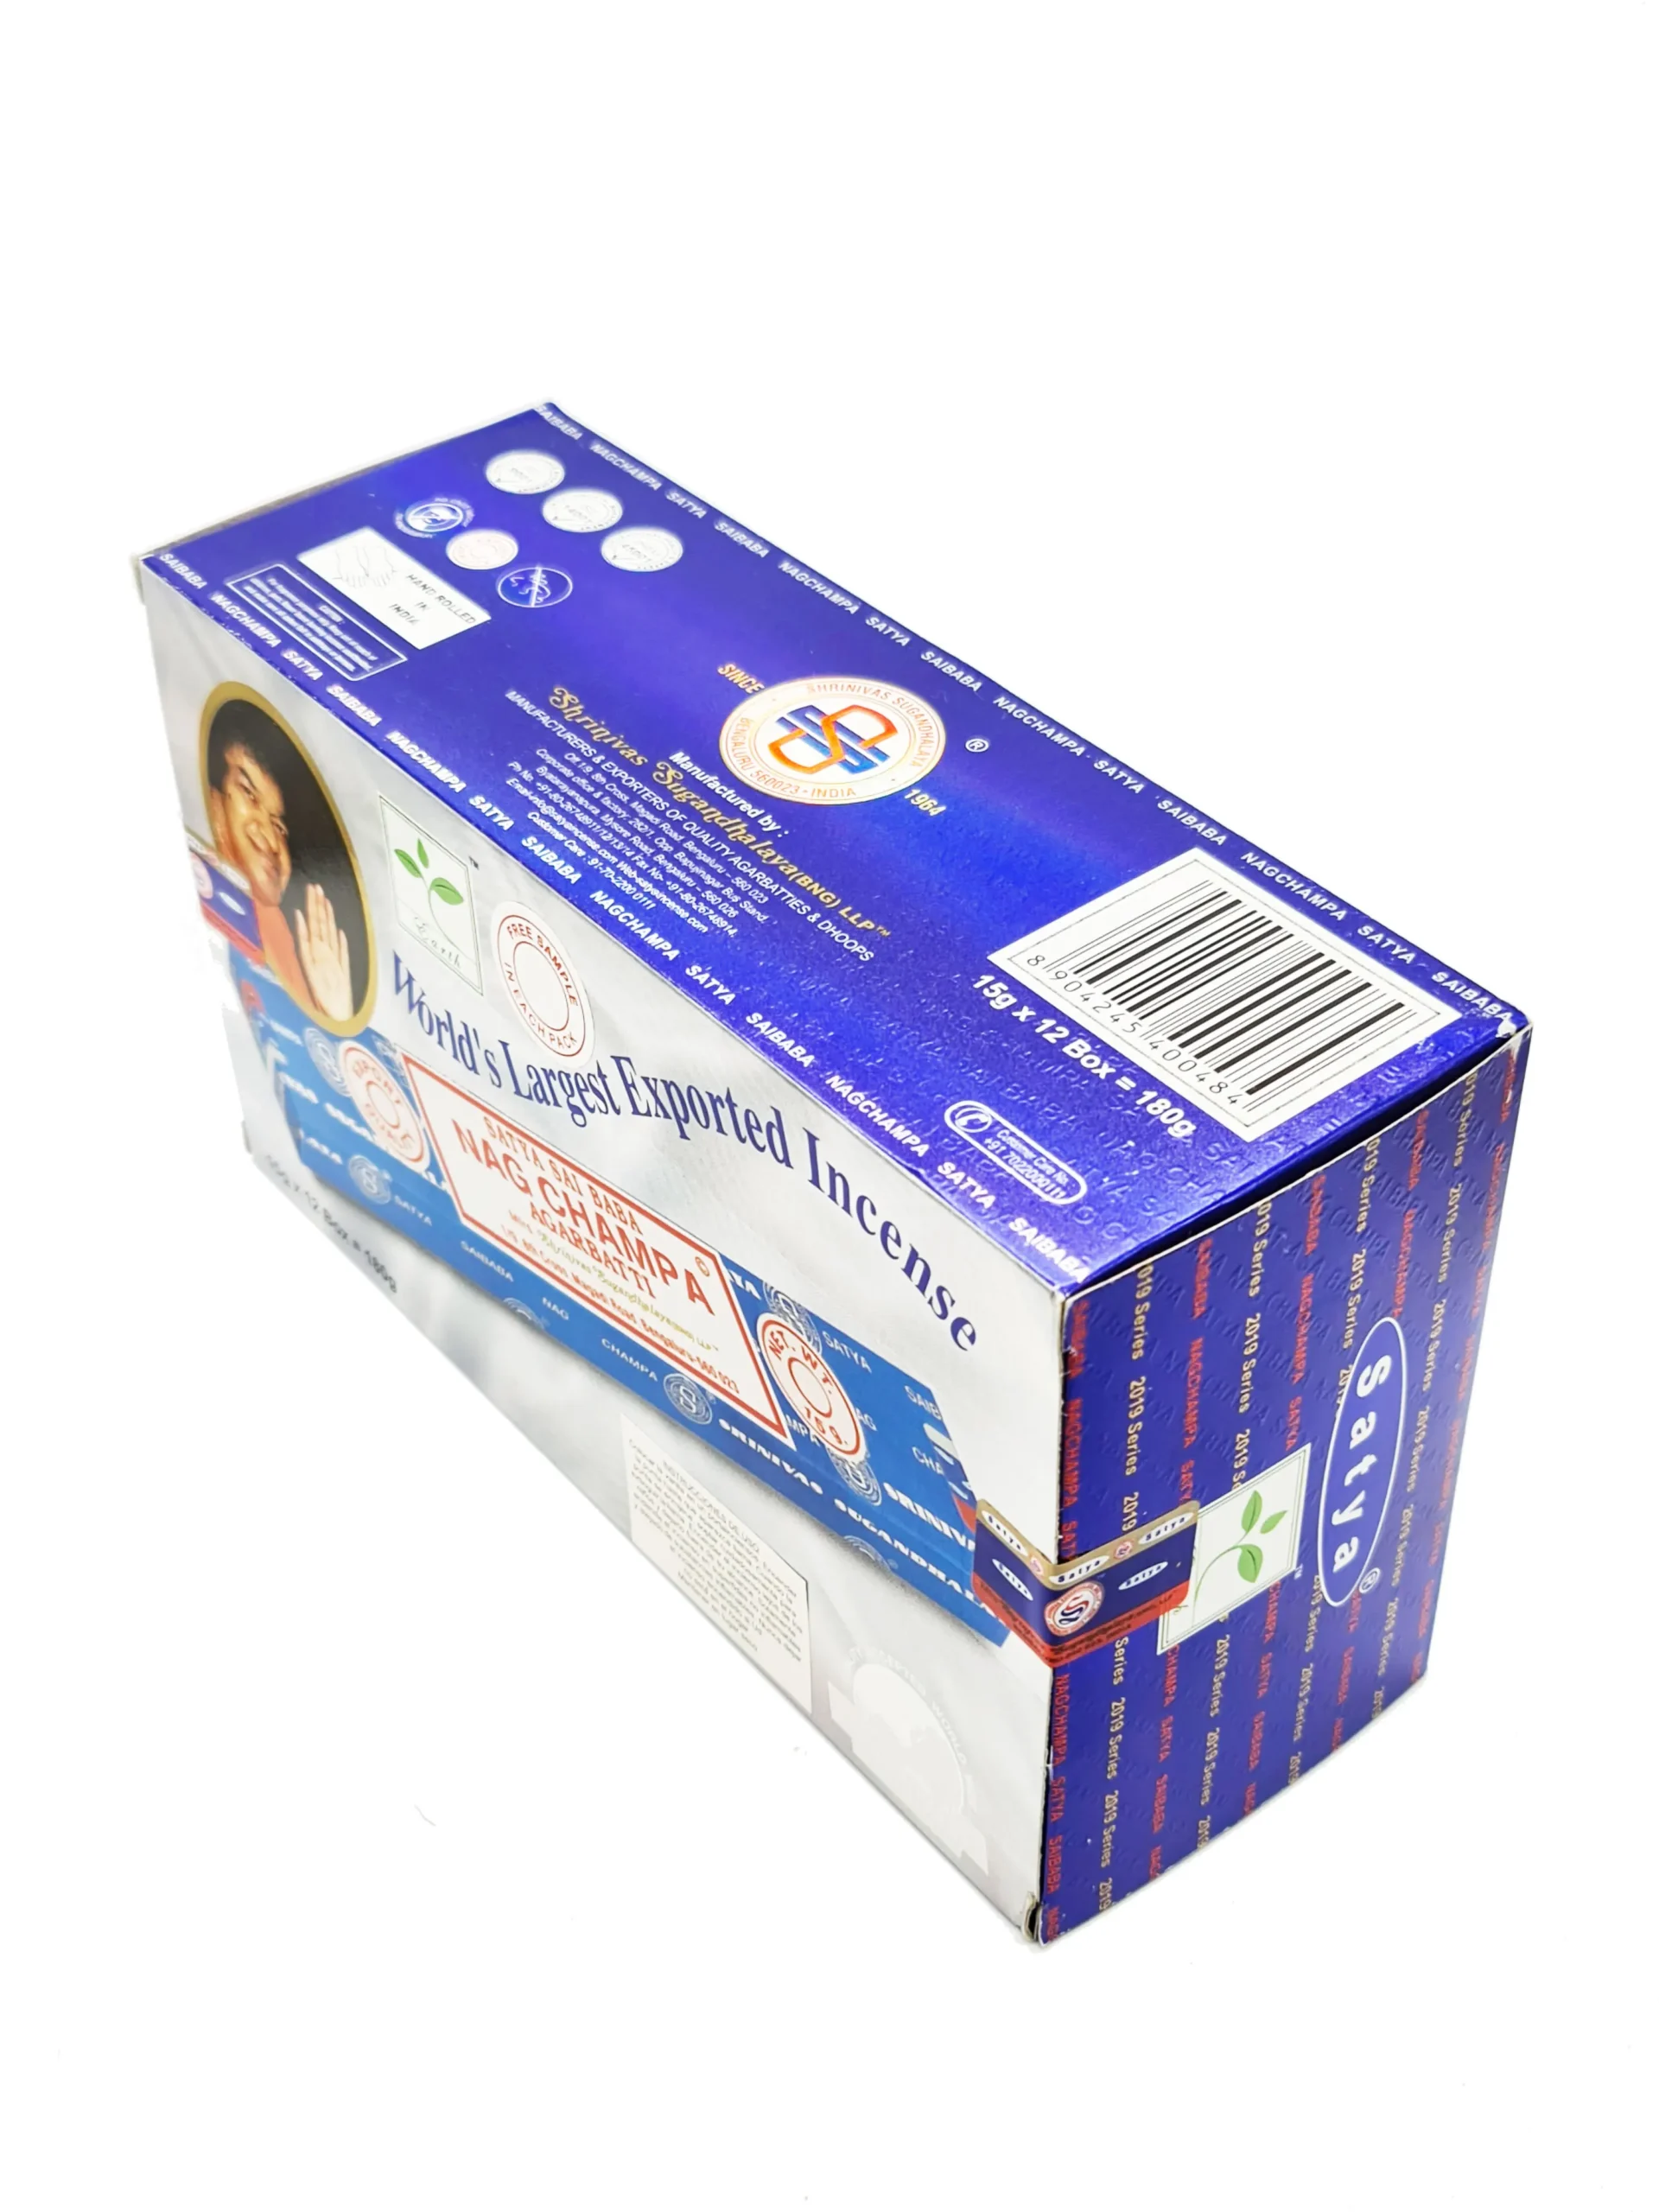 Satya Nag Champa - Varillas de incienso Satya sai Baba Insenses 15 gmx3 (45  gm) paquete con soporte de incienso Raajsee, incienso natural Satya Nag